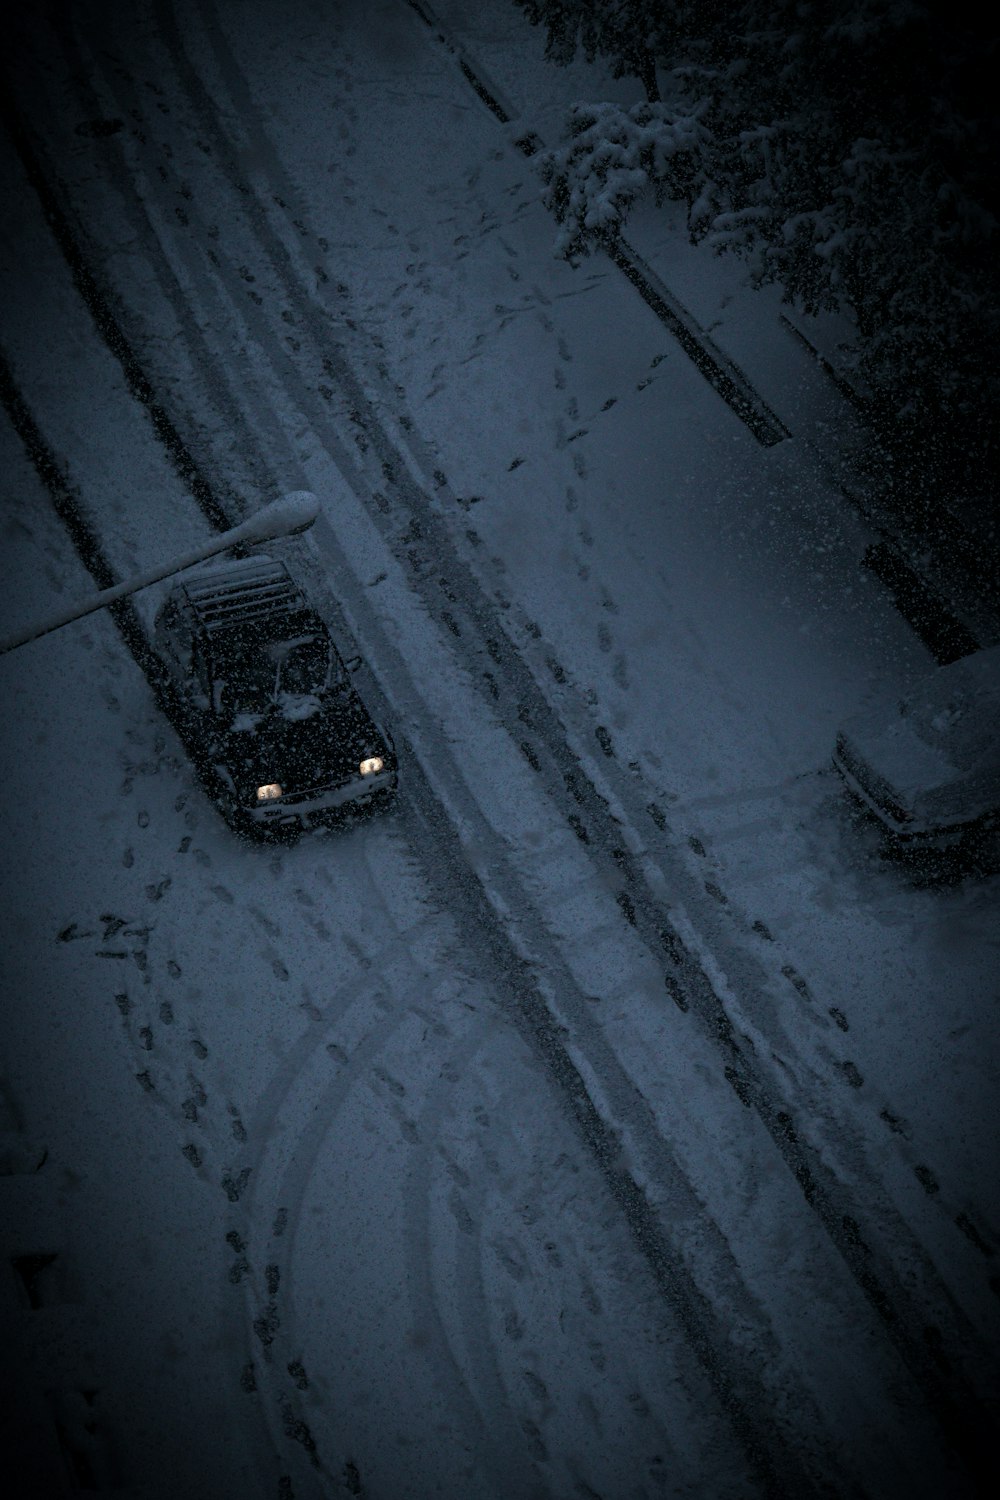 雪道を走る車